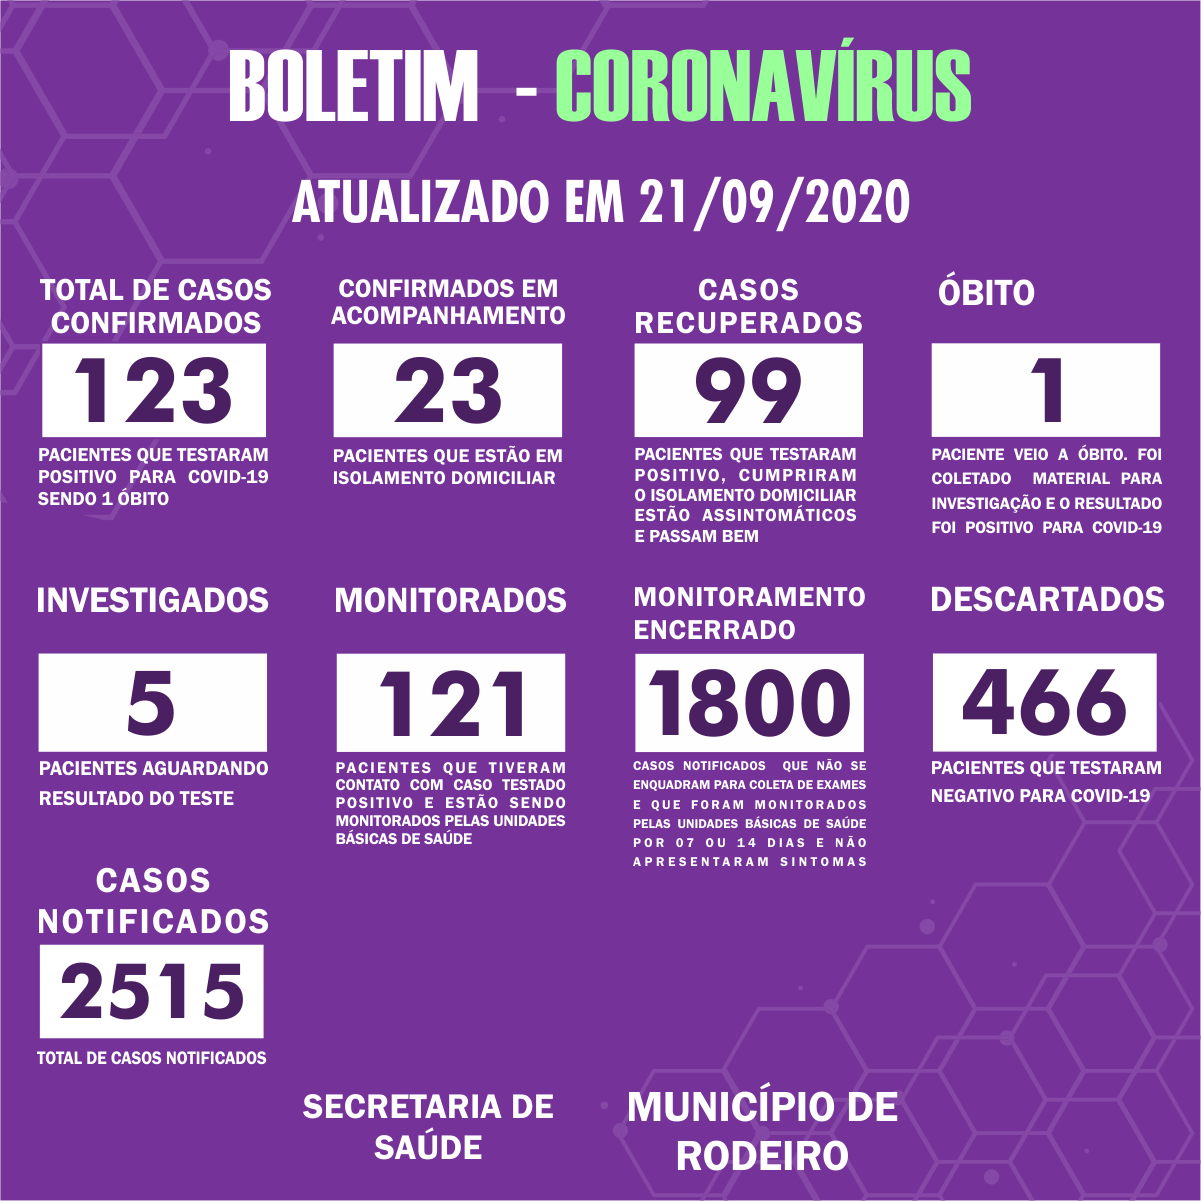 Boletim Epidemiológico do Município de Rodeiro sobre coronavírus, atualizado em 21/09/2020